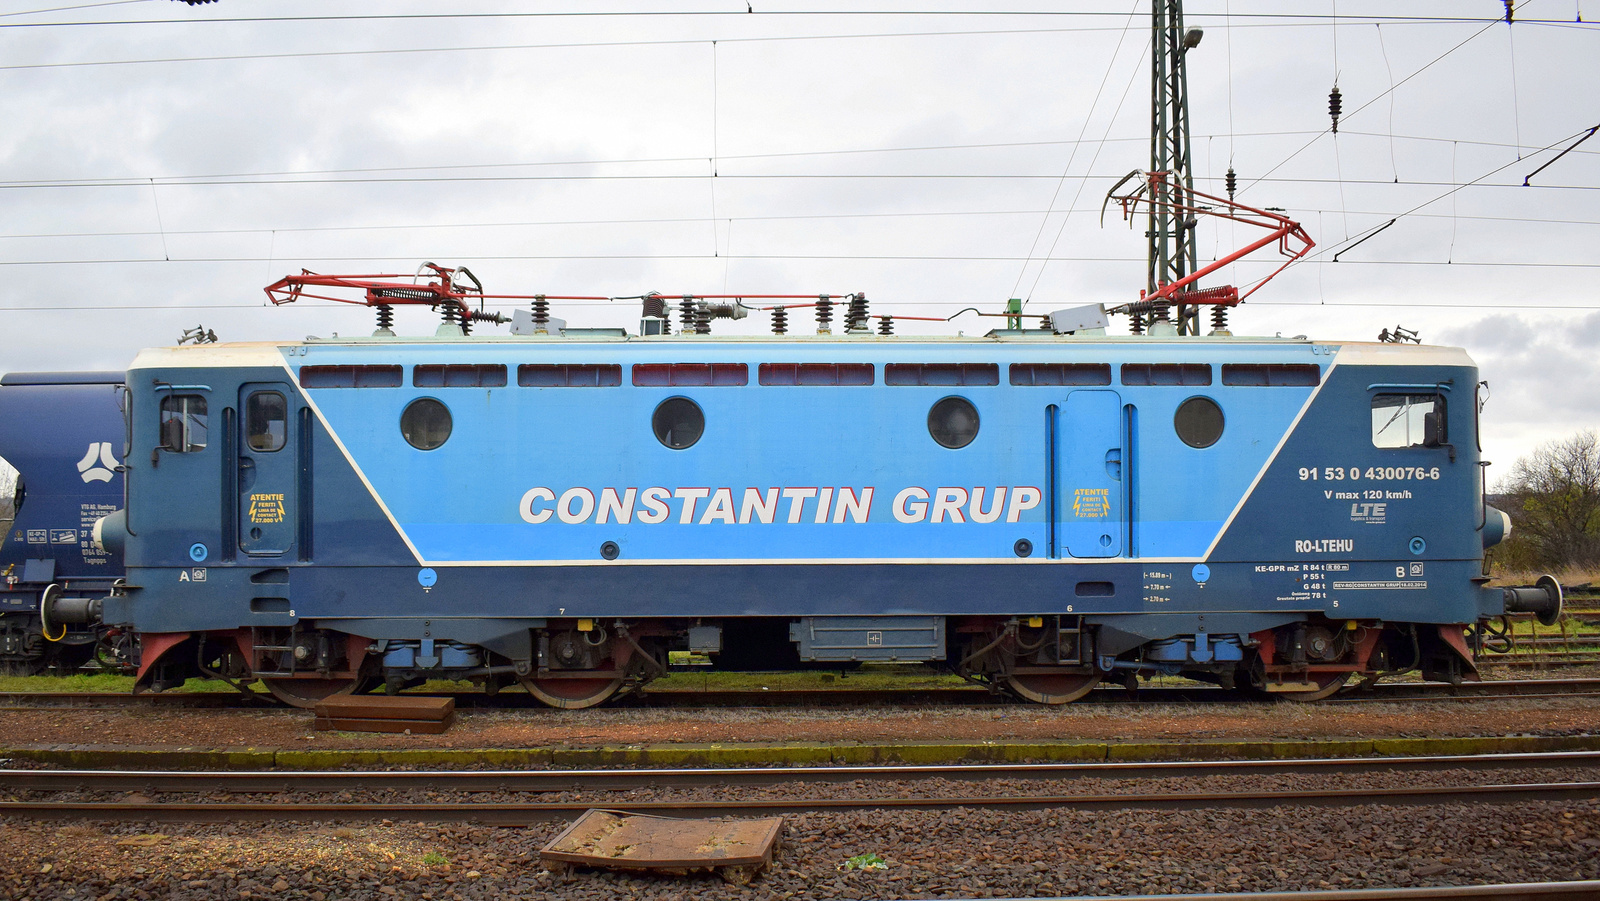 430 076 (Constantin Grup)